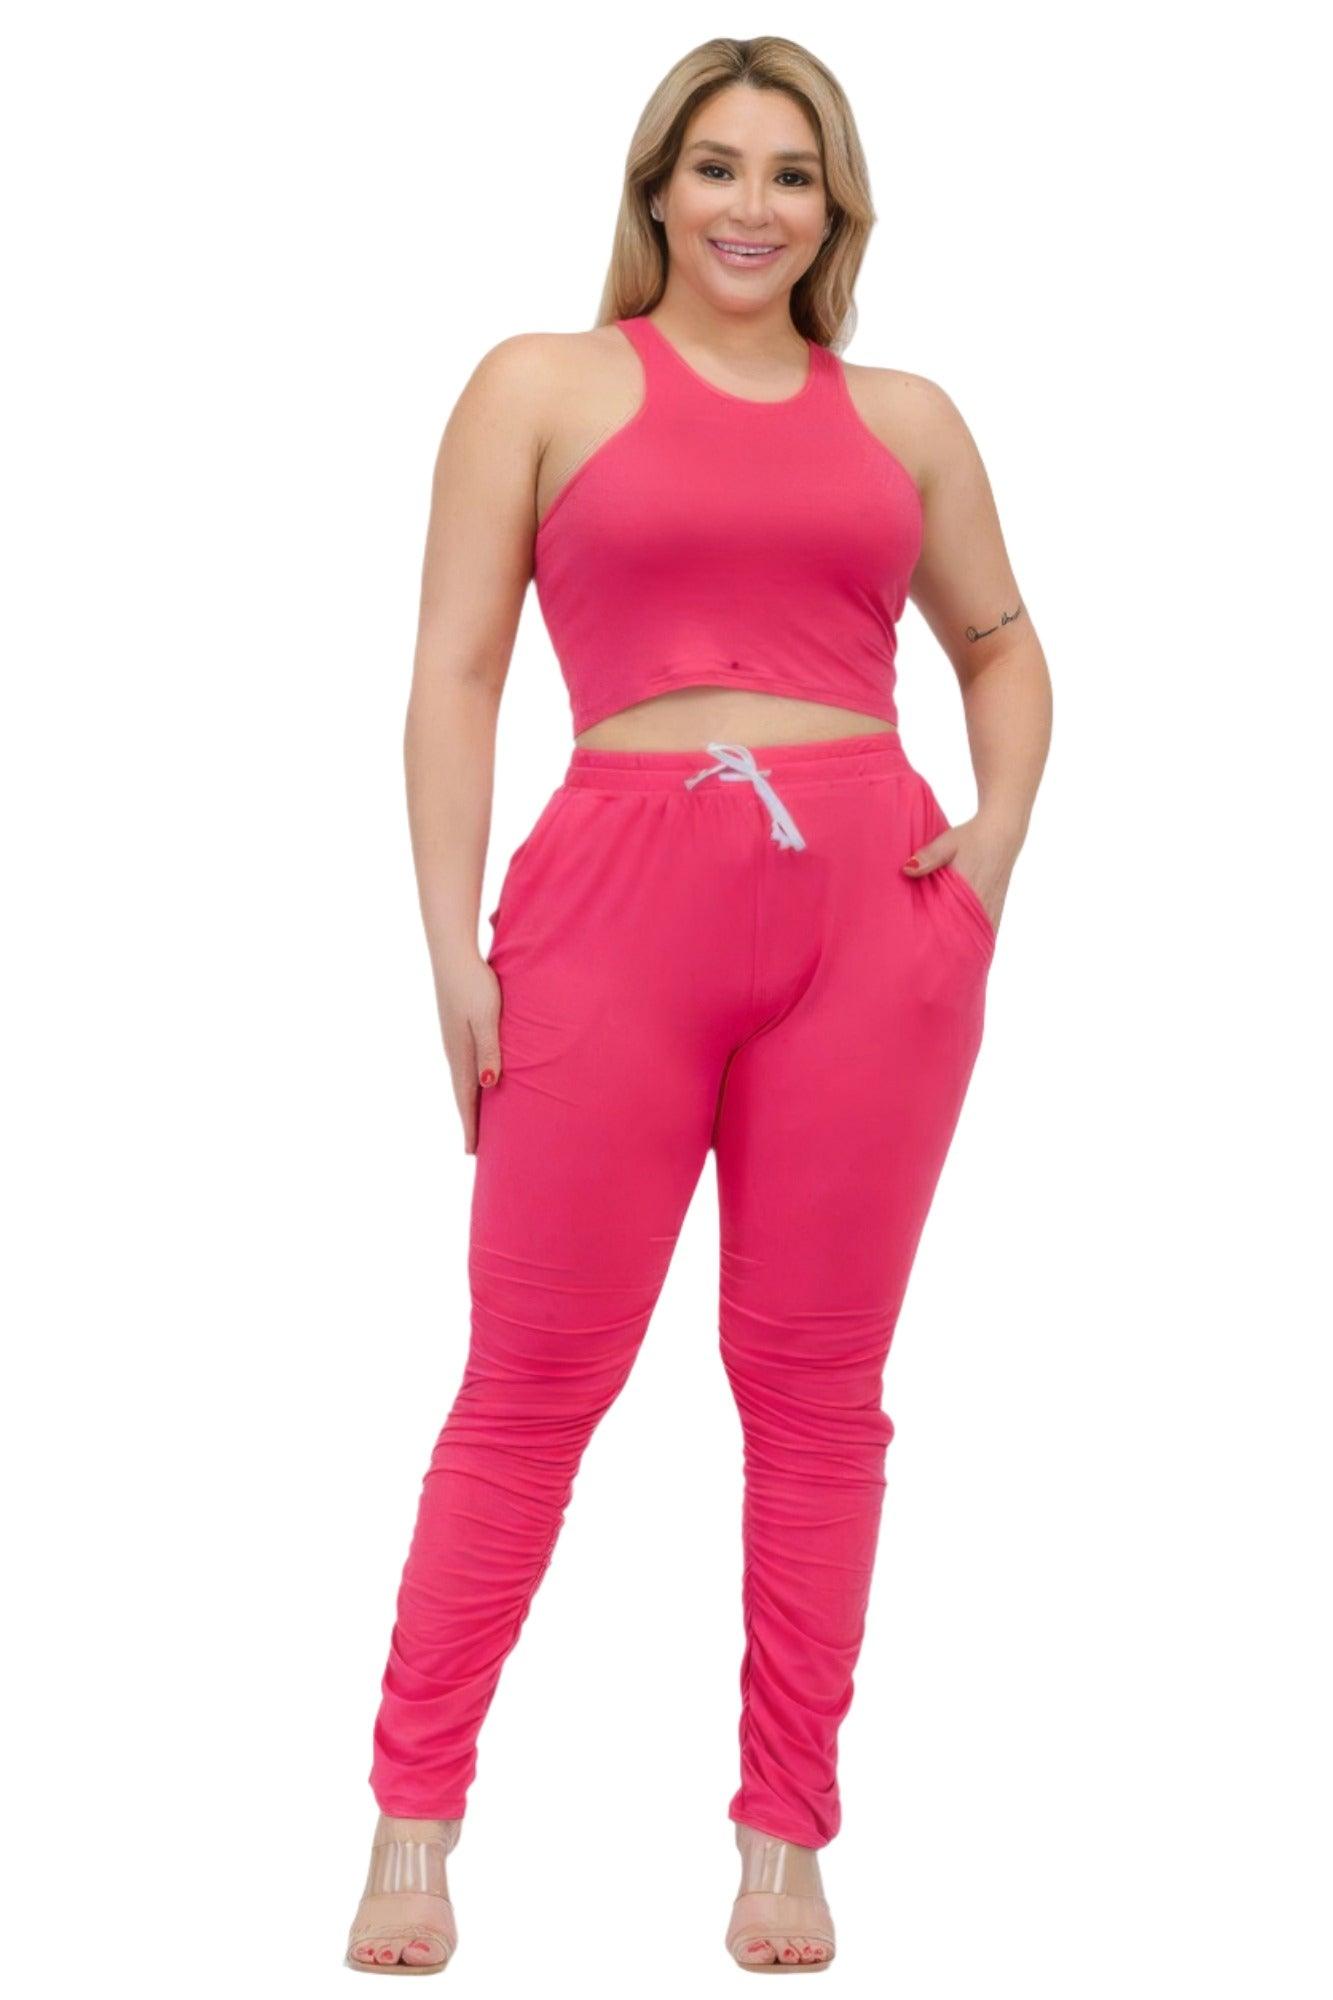 Women's Activewear Plus Size Crop Tank Top & Ruched Pants Set